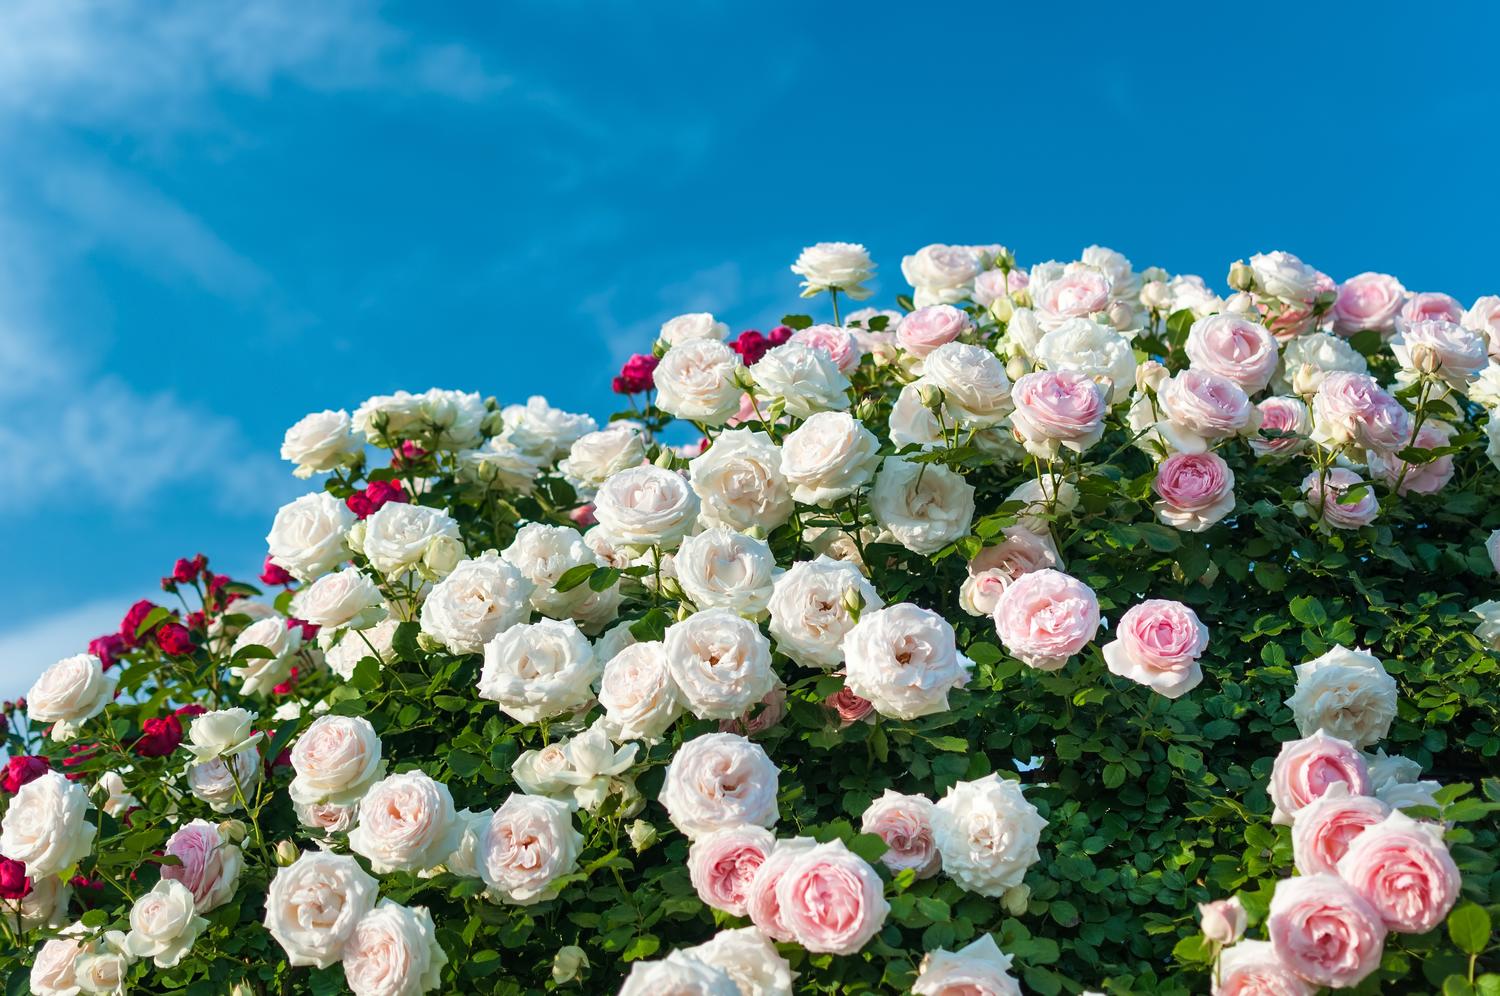 京成バラ園のバラの見ごろやバラまつりとバラ園情報 バラ園案内 バラの見ごろと開花状況